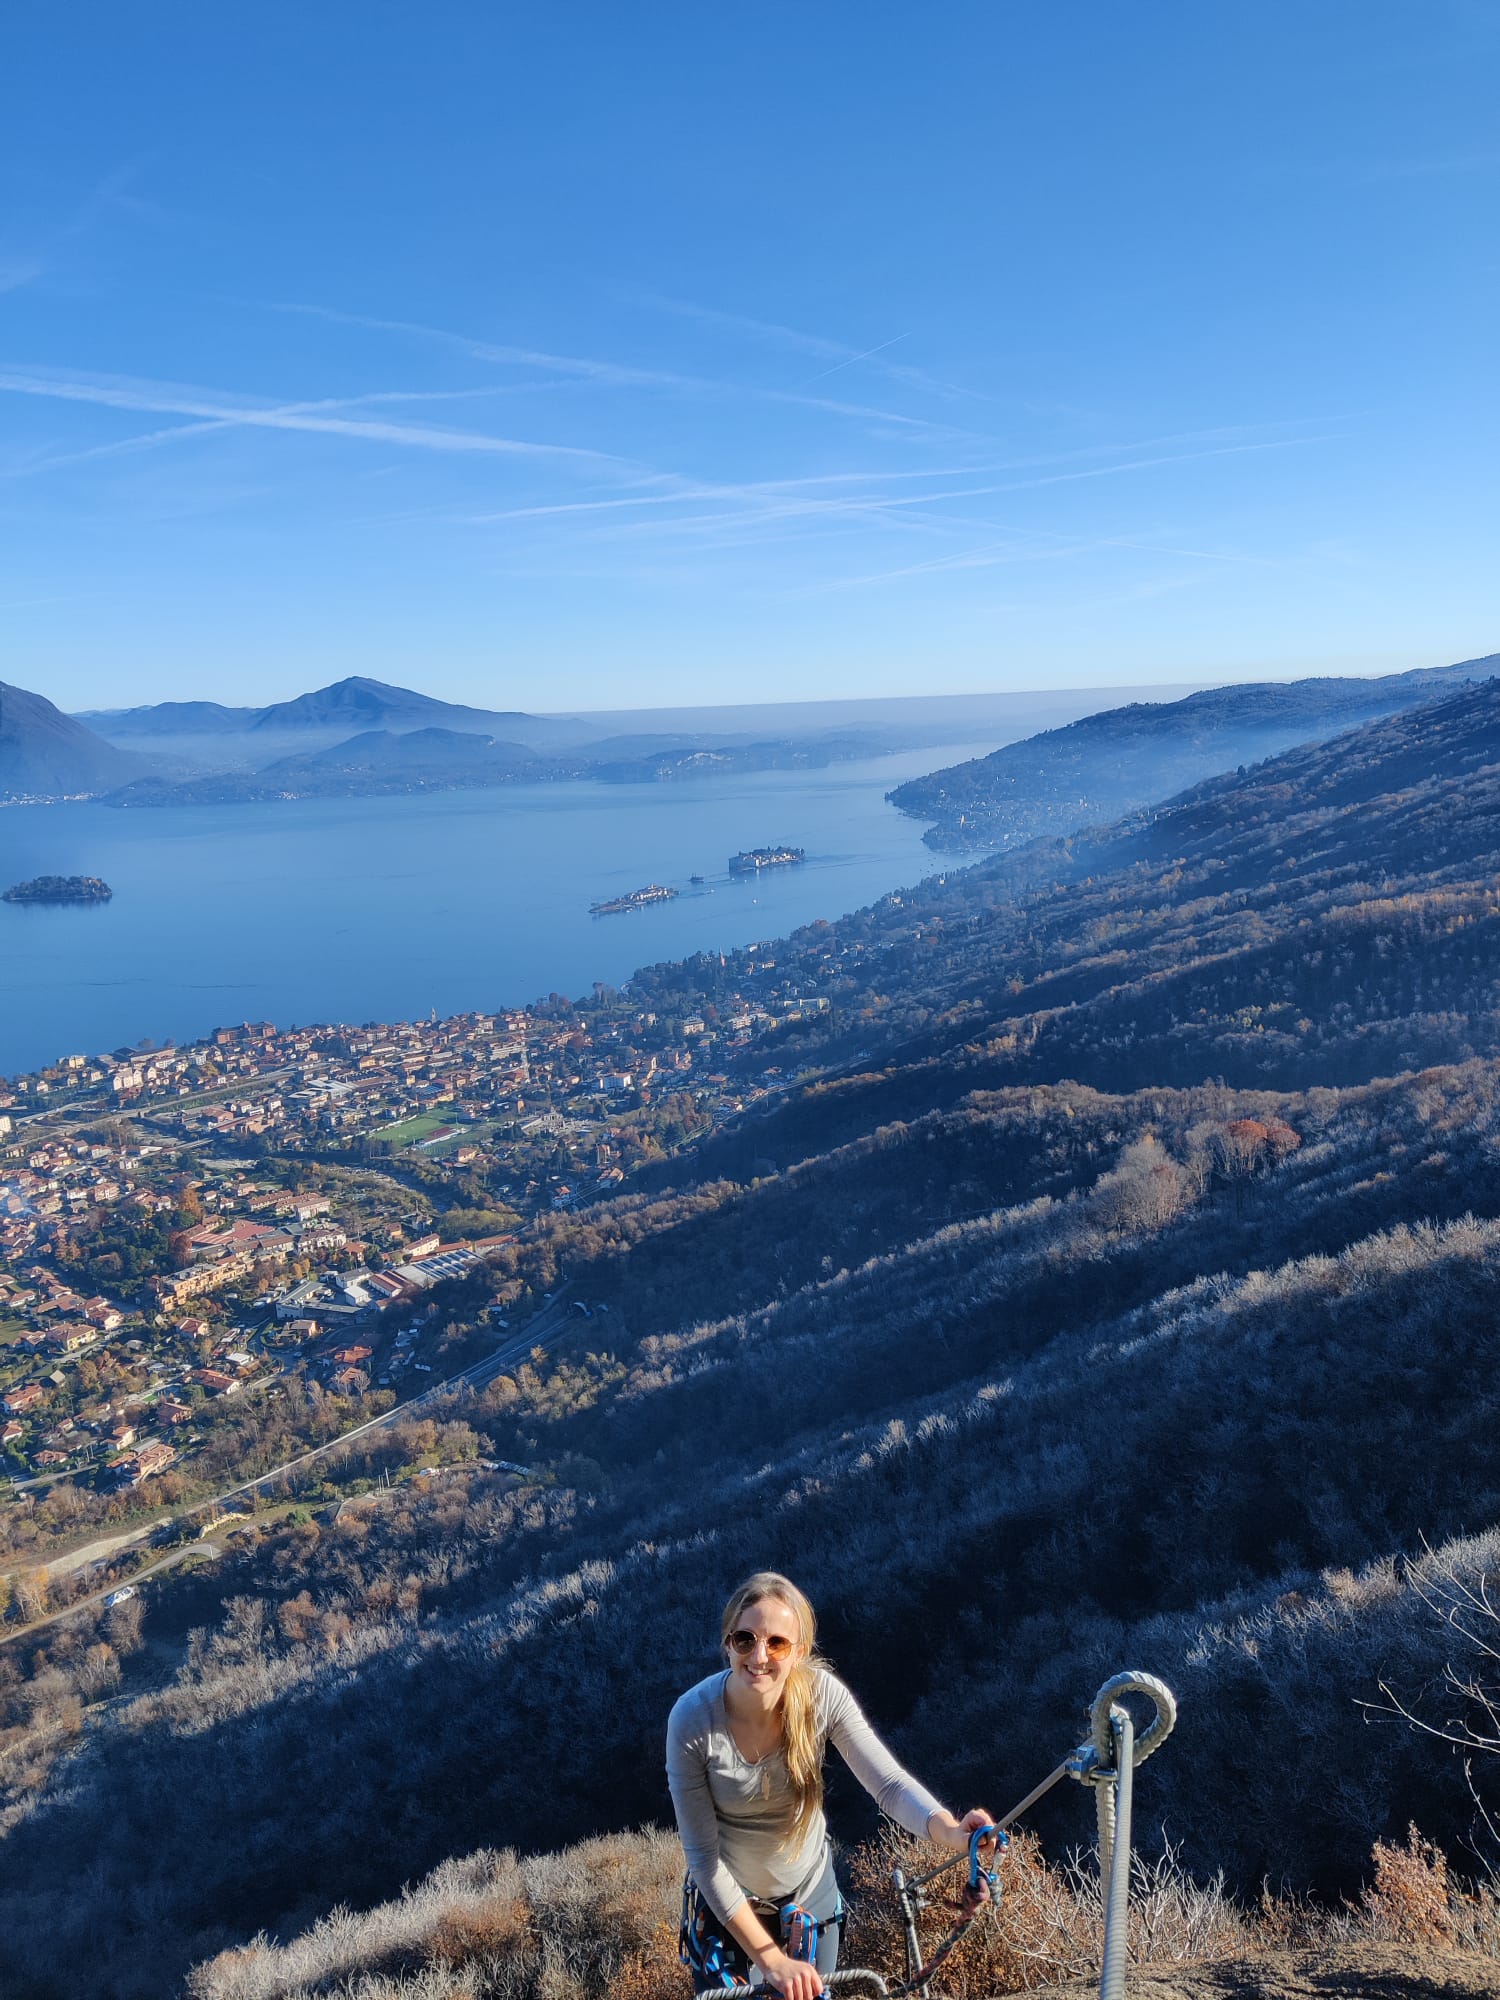 Via Ferrata Picasass: Experiencing Lake Maggiore from a different angle